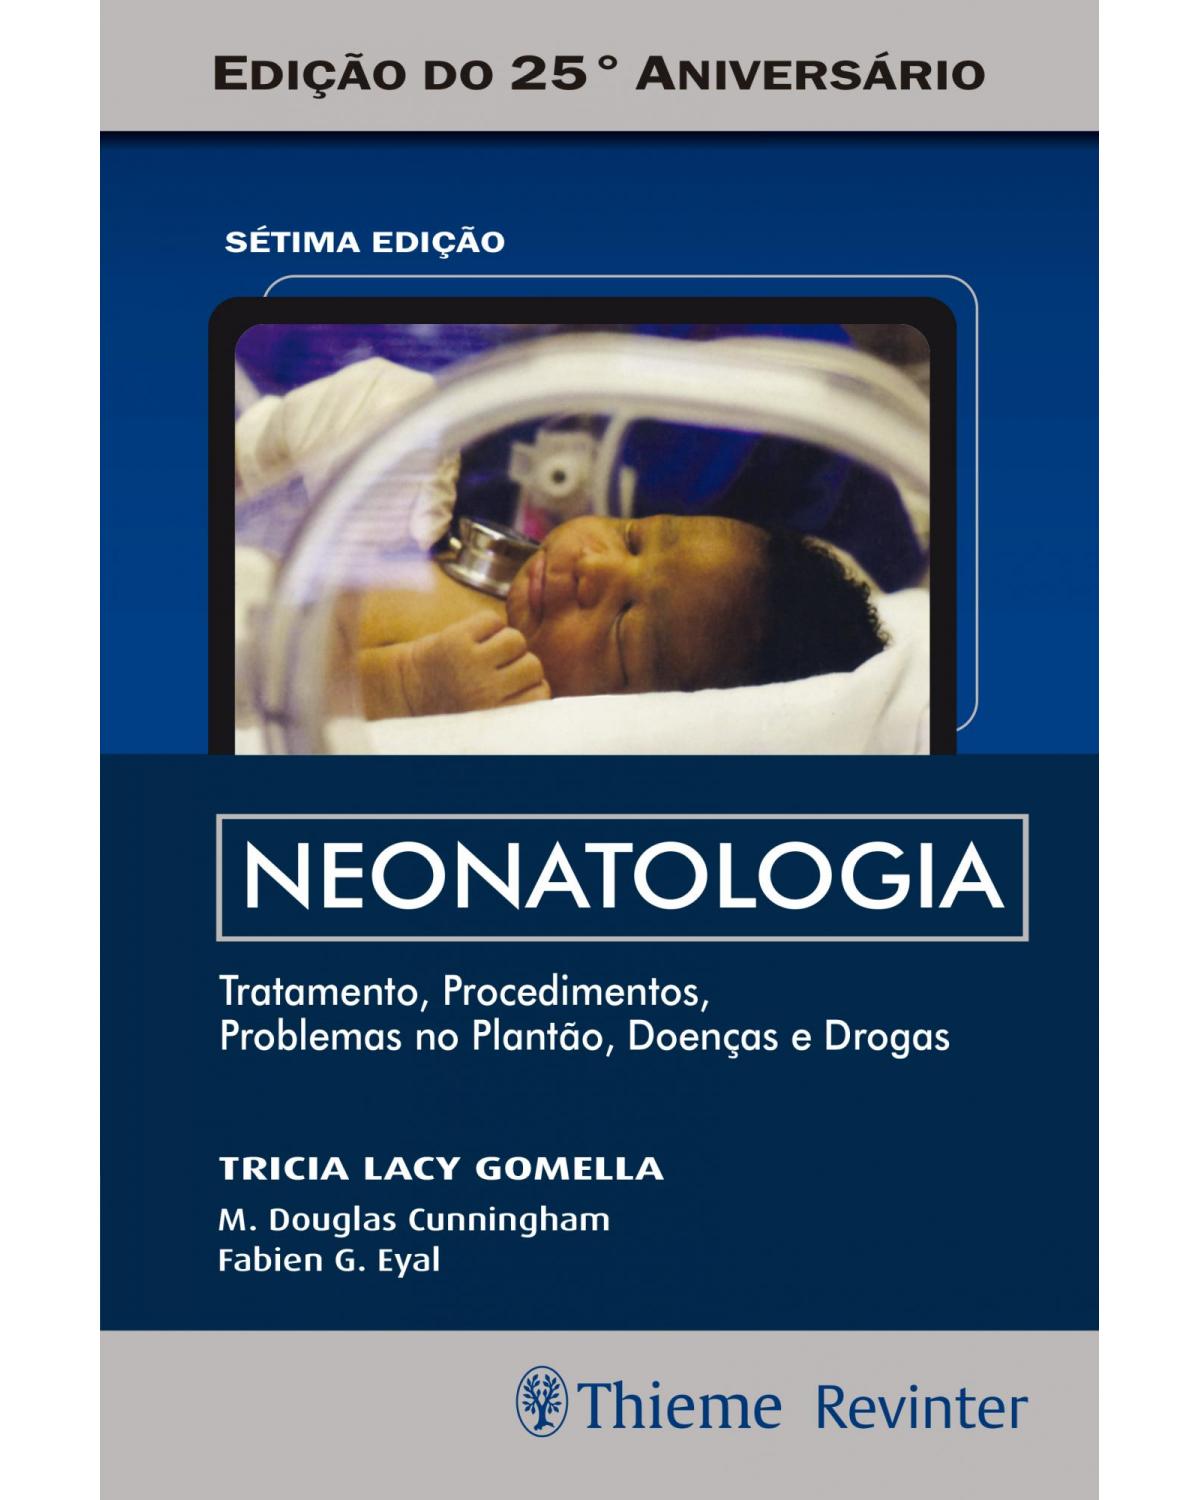 Neonatologia - Tratamento, Procedimentos, Problemas no Plantão, Doenças e Drogas - 7ª Edição | 2018